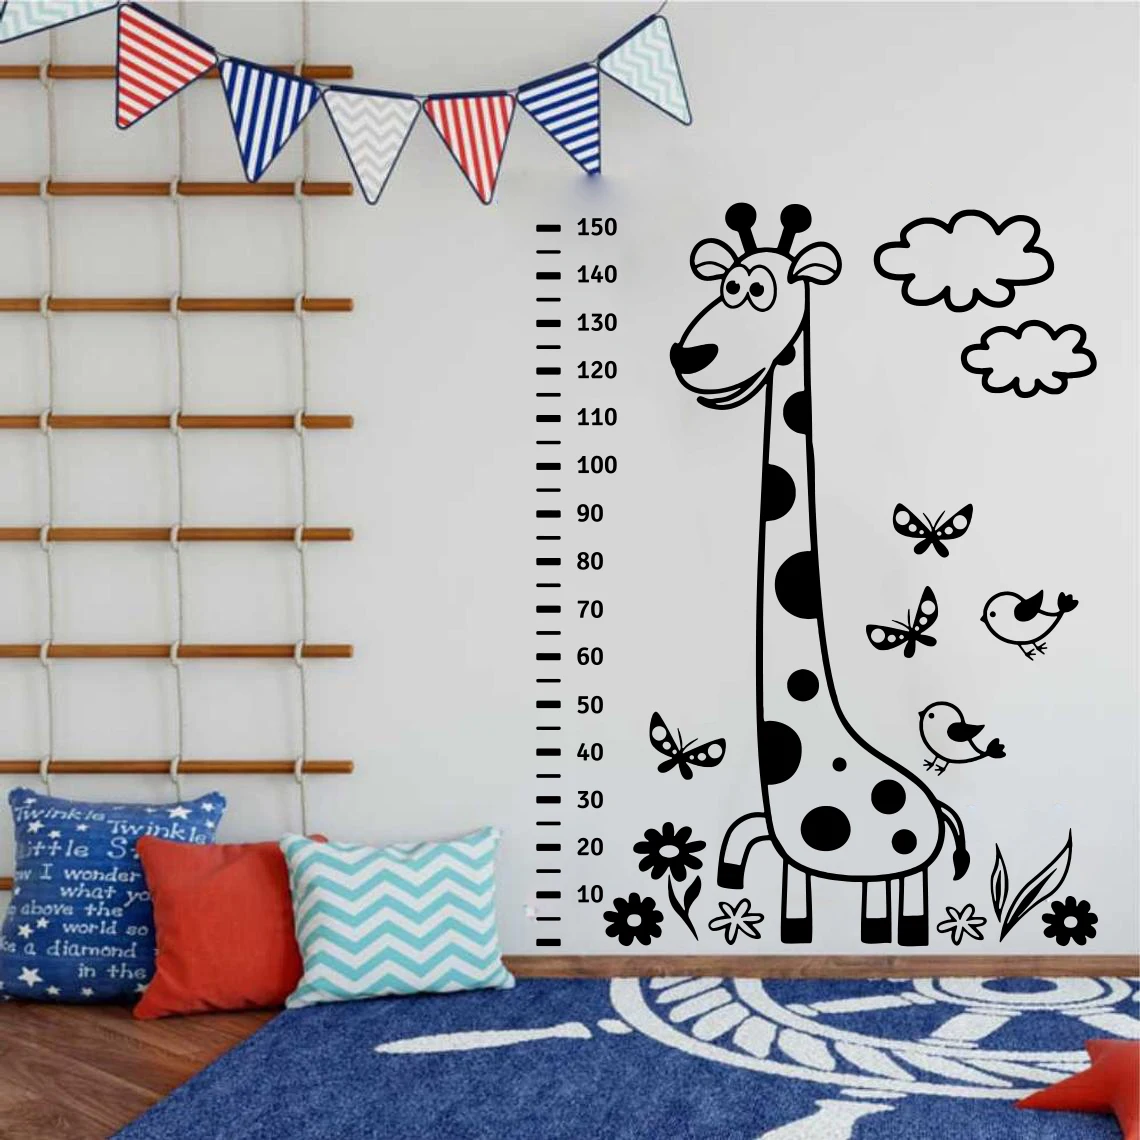 

Large 150cm Height Measure Giraffe Animal Wall Decal Kids Teen Room Cartoon Growth Chart Bird Cloud Wall Sticker Vinyl Decor